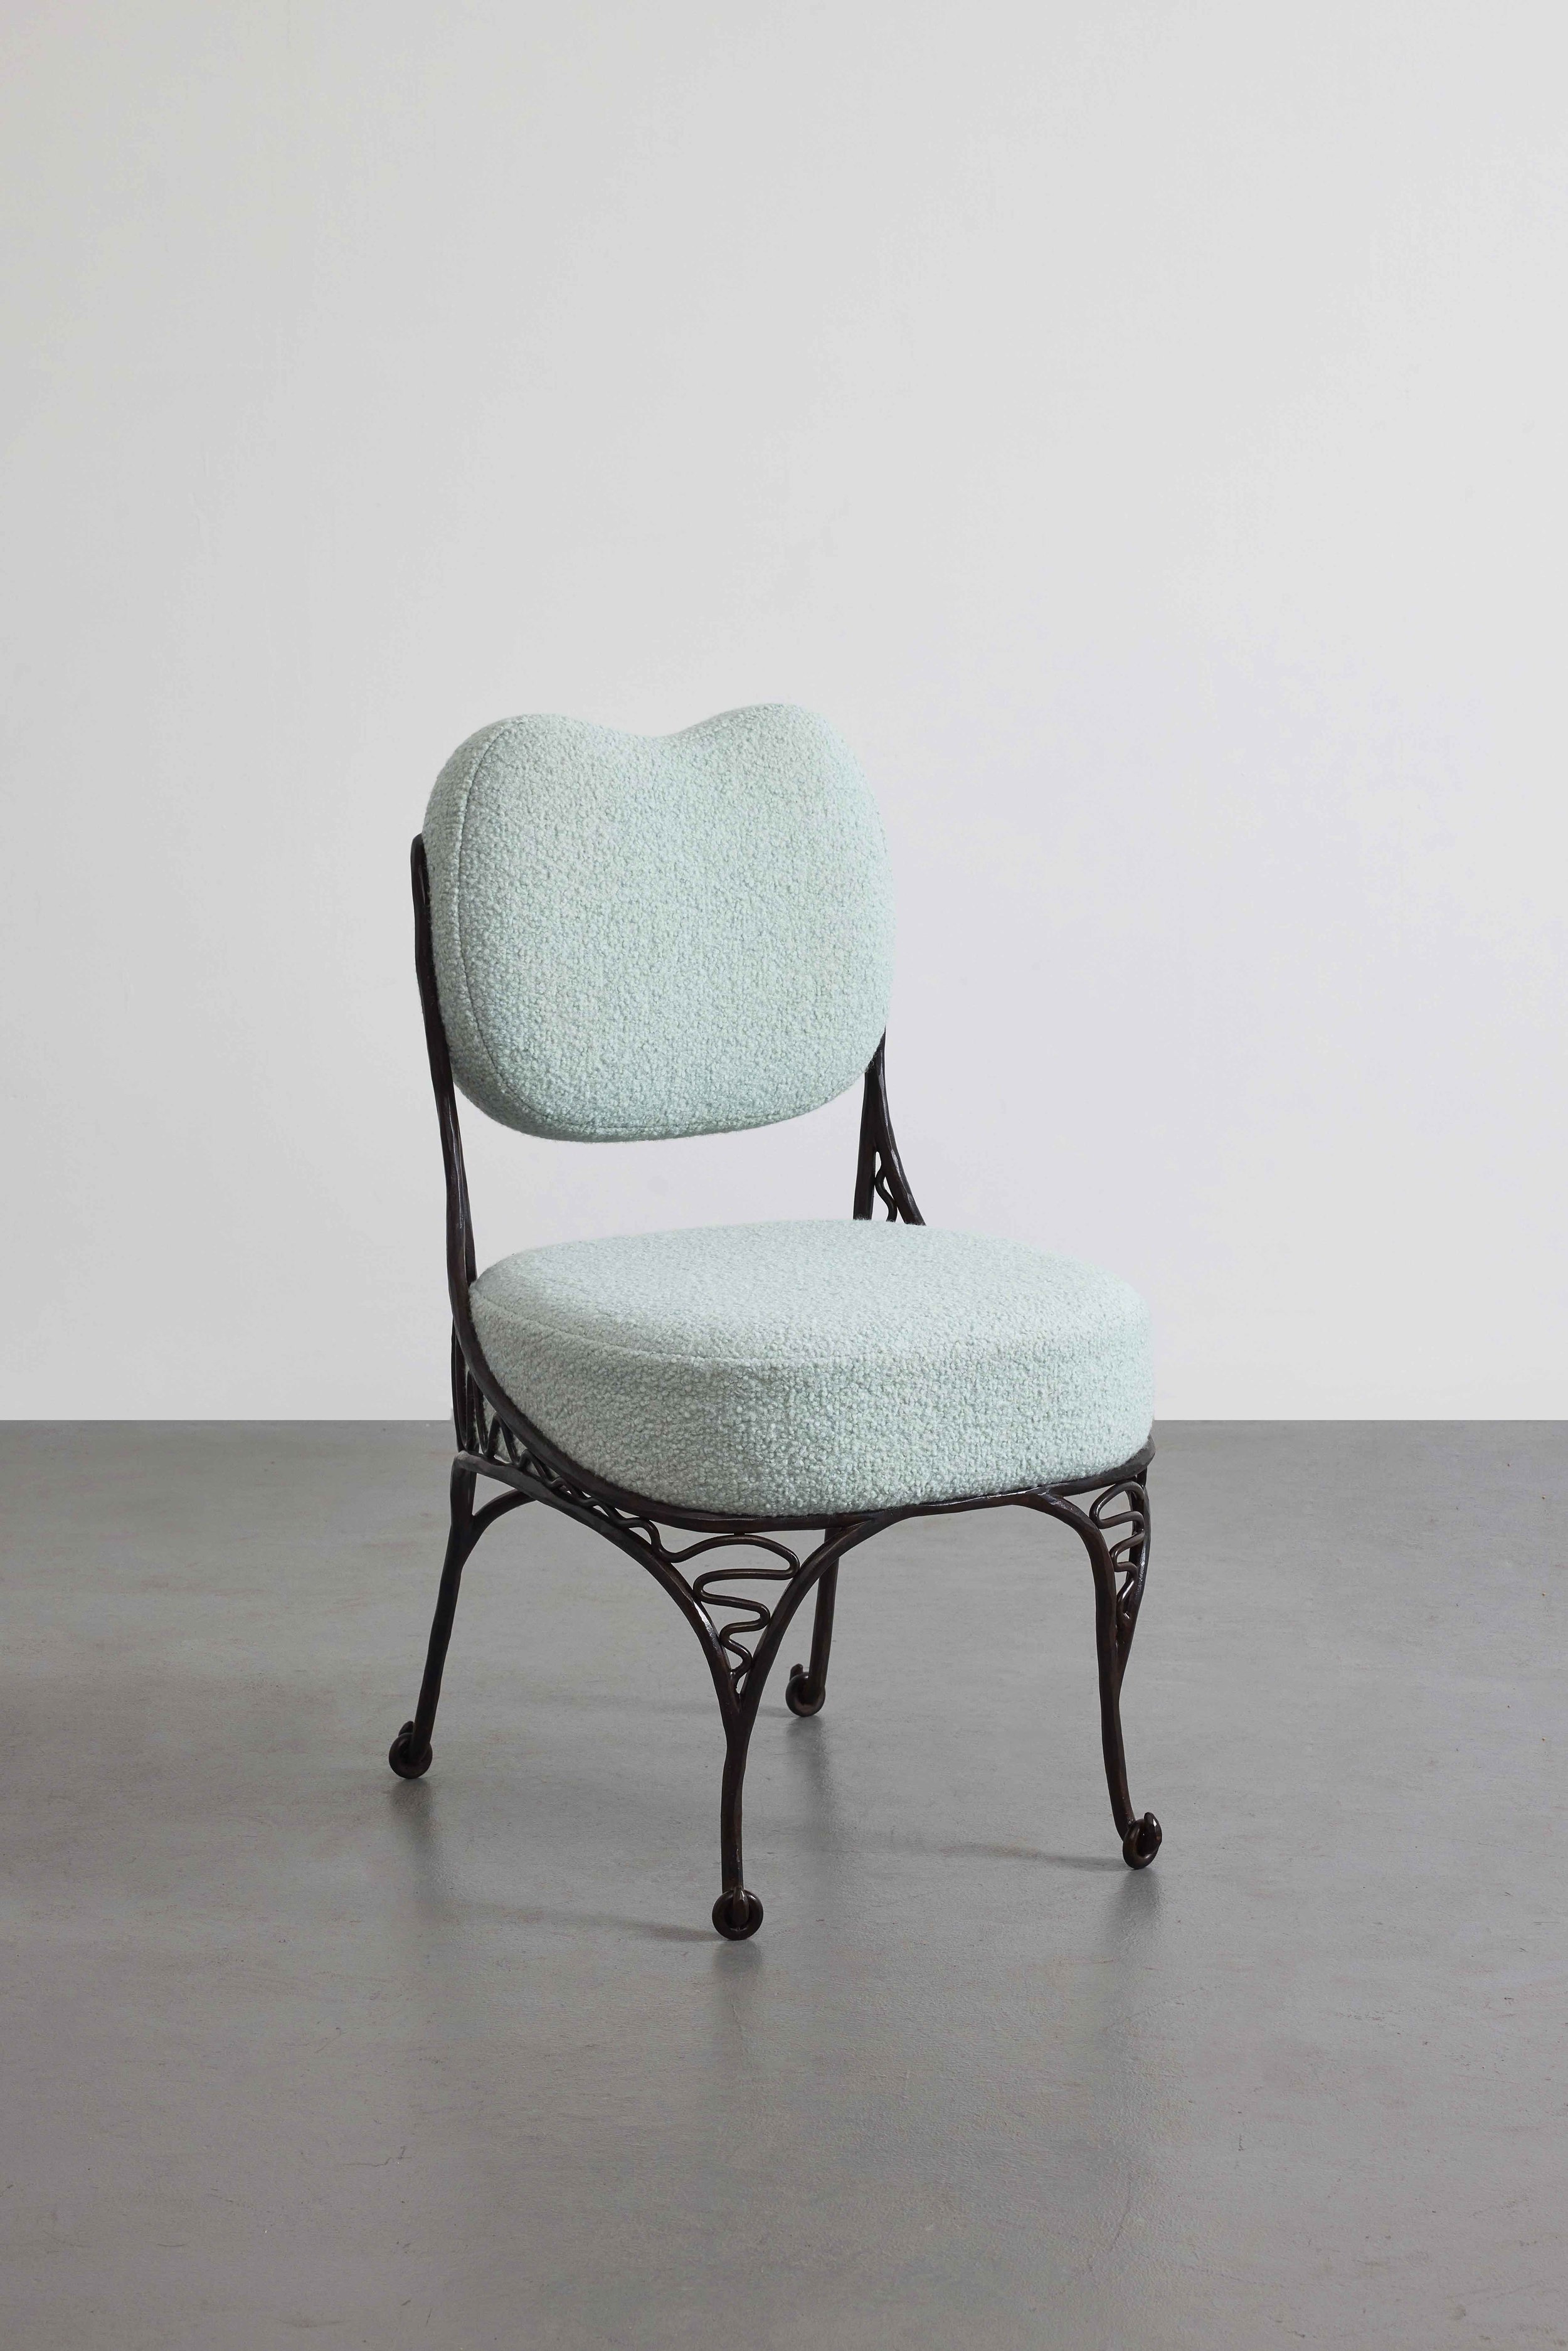 1.MB Chair 'Operetta'.jpg